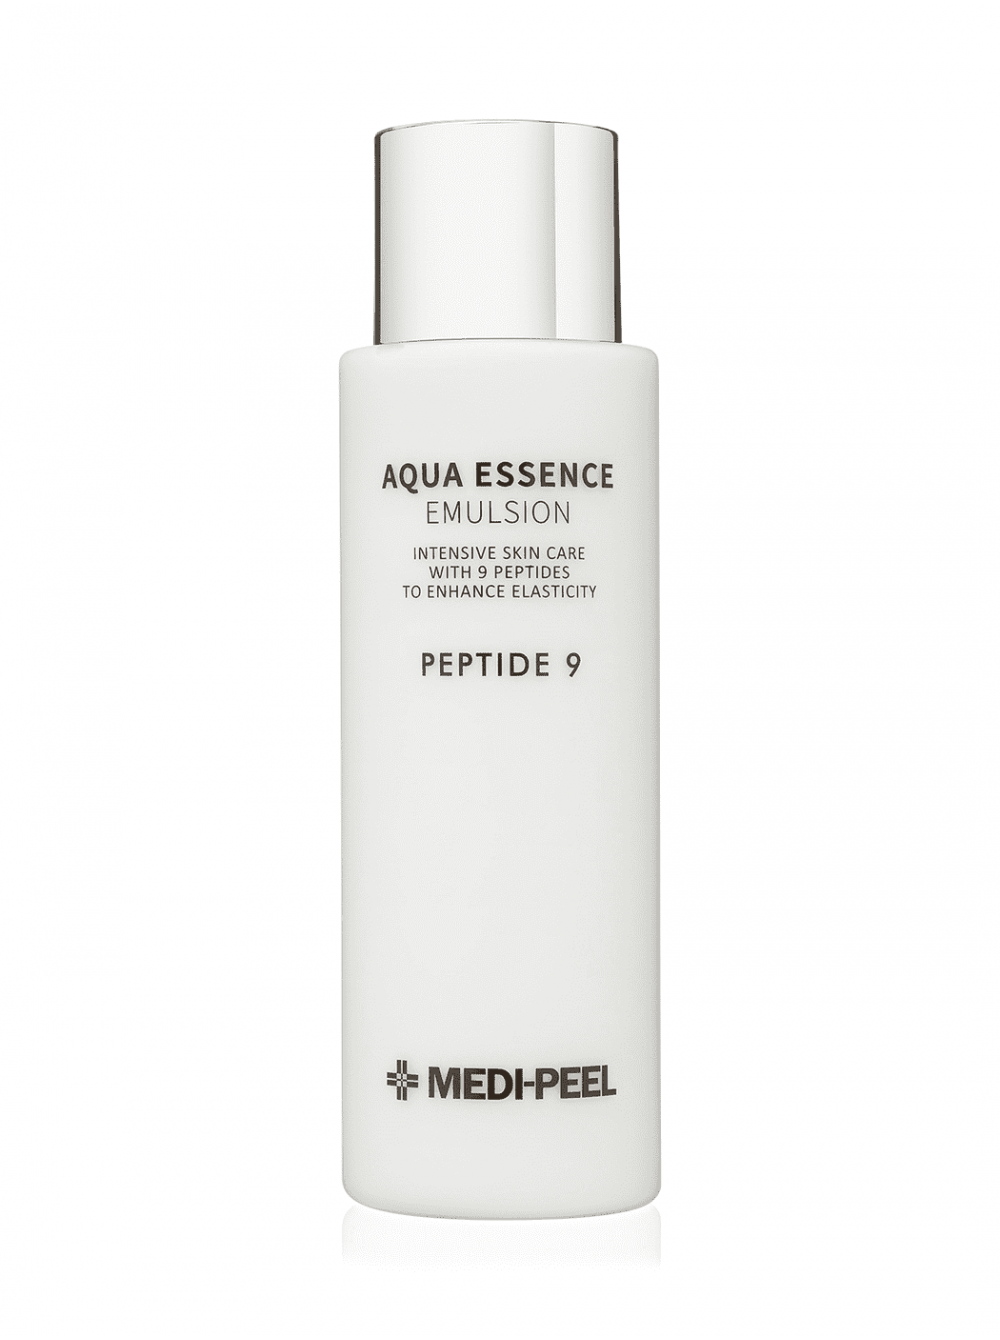 Medi peel aqua essence toner. Medi-Peel Aqua Essence Emulsion Peptide 9 250мл. Medi Peel Aqua Essence Emulsion. Medi Peel Emulsion Peptide 9. Emulsion Medi Peel Tox.